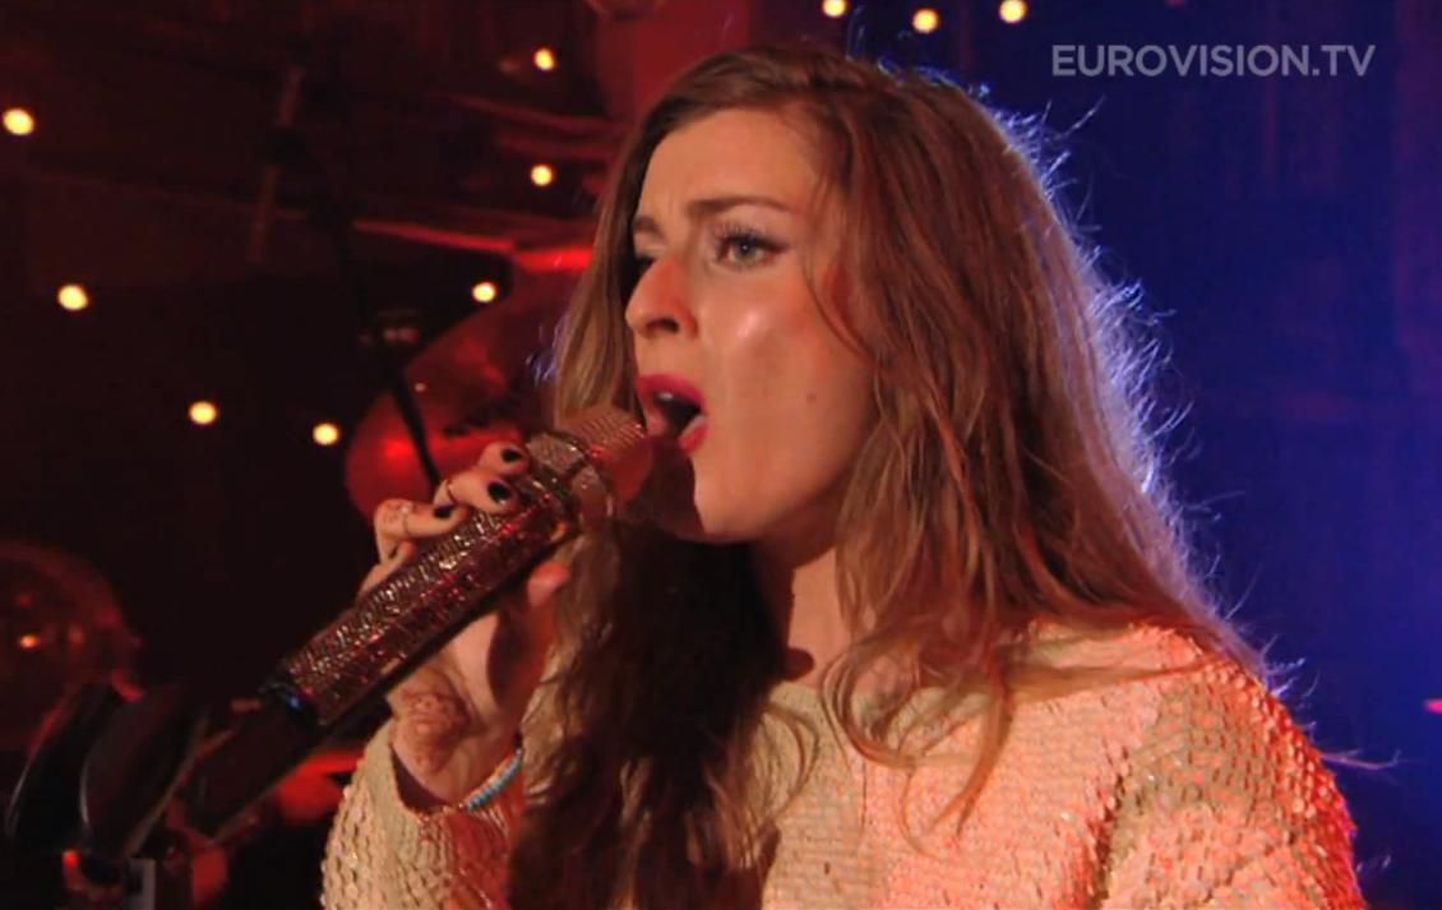 Inglismaa saadab Eurovisionile 26-aastase Molly